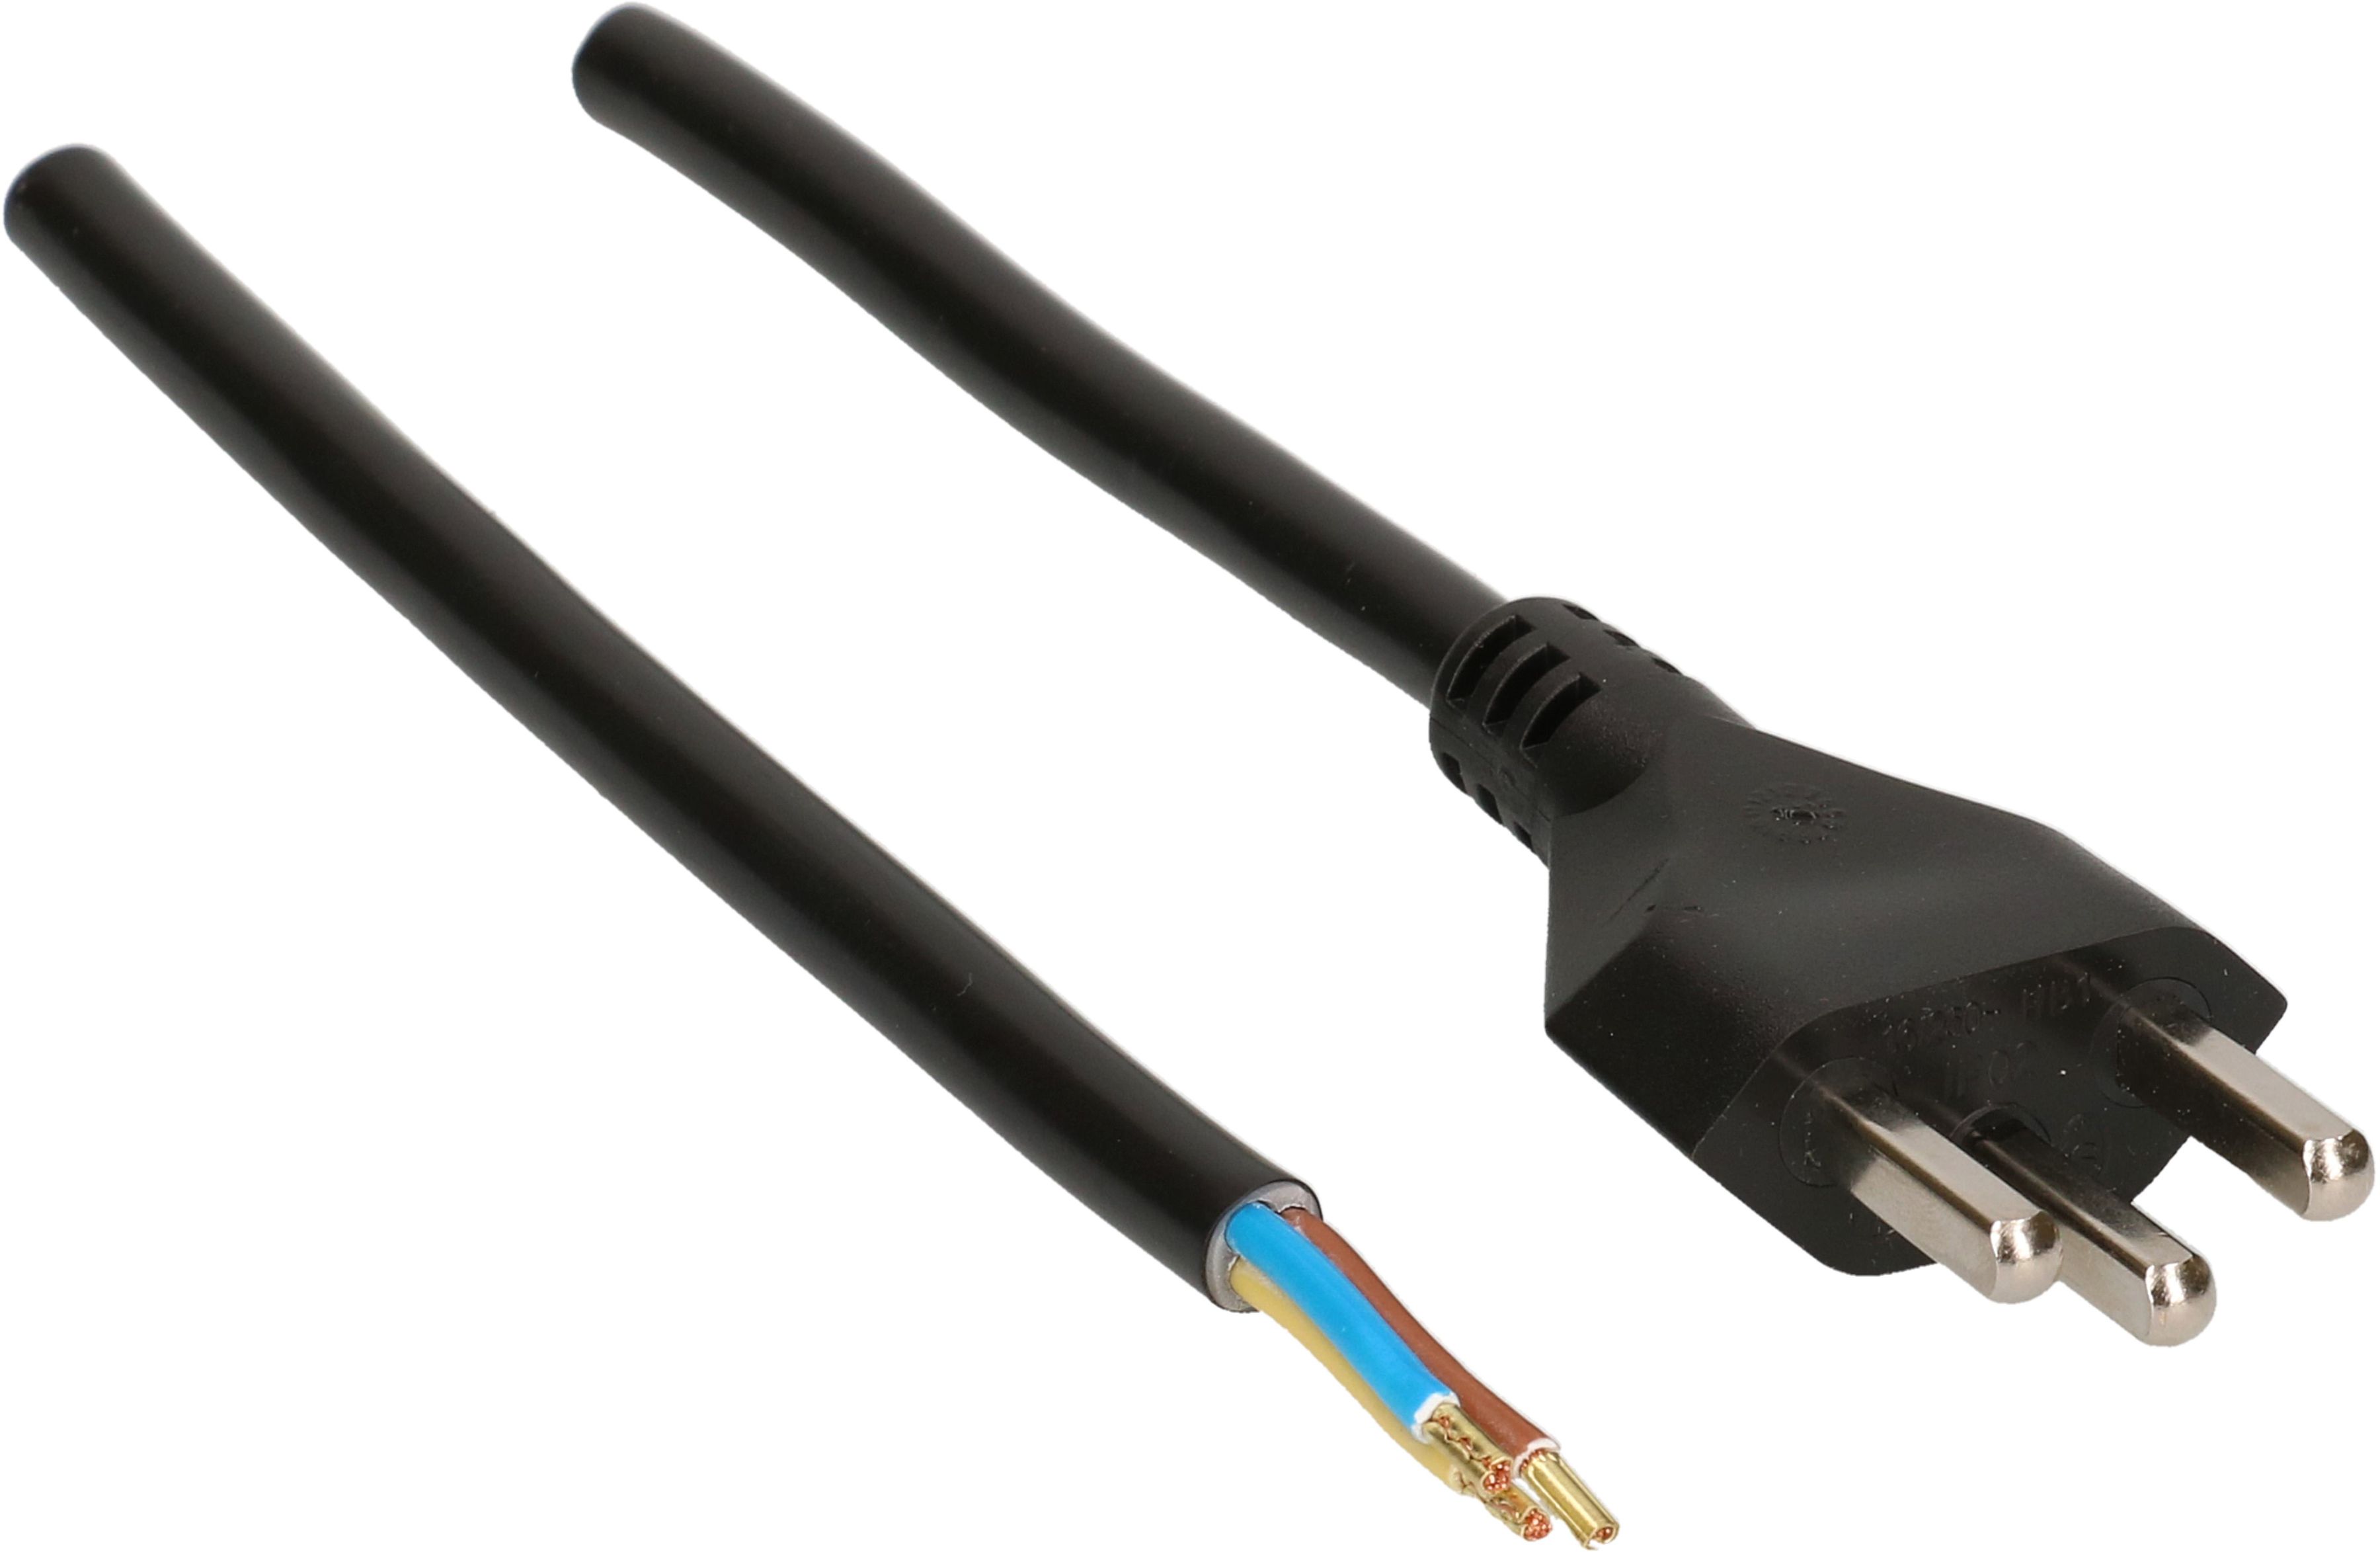 TD câble secteur H05VV-F3G1.5 3m noir type 23